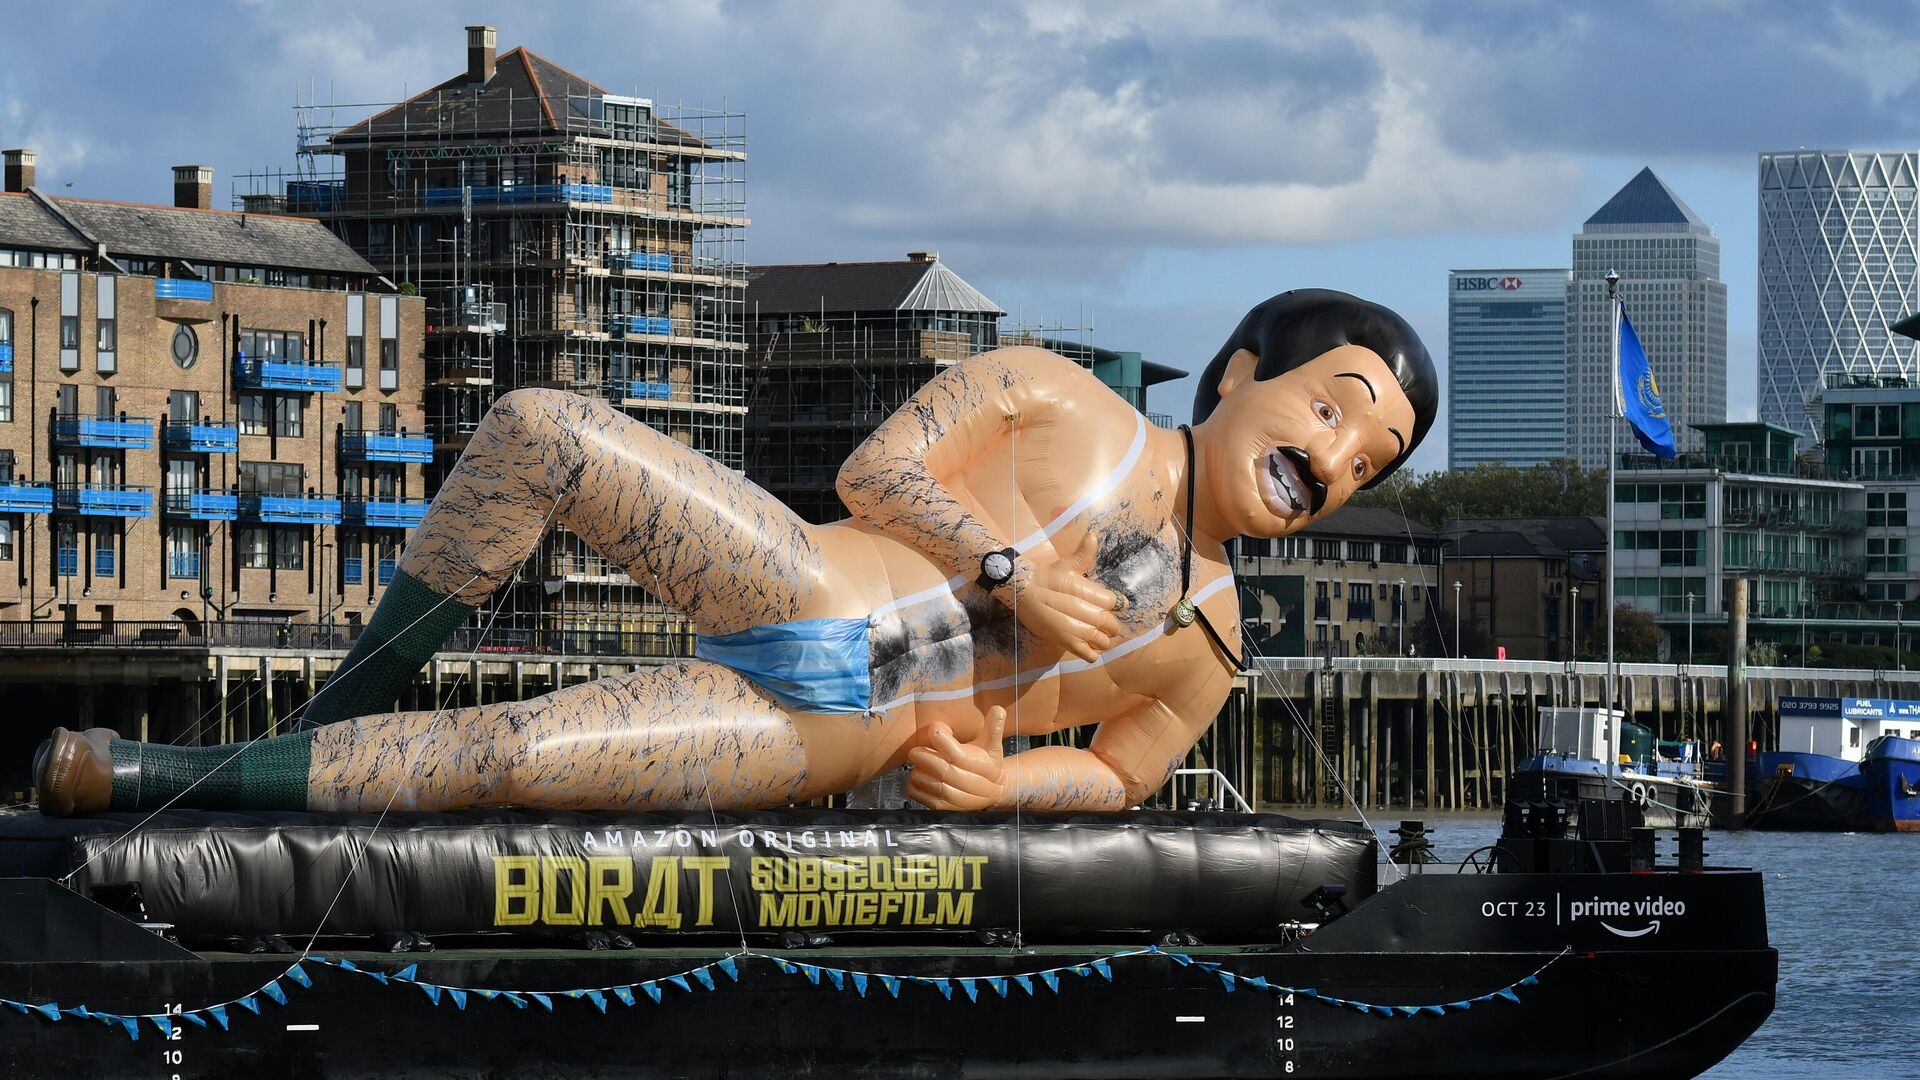 Надувная лодка с изображением Бората  в поддержку выхода сиквела Borat Subsequent Moviefilm на река Темза в Лондоне - РИА Новости, 1920, 23.10.2020